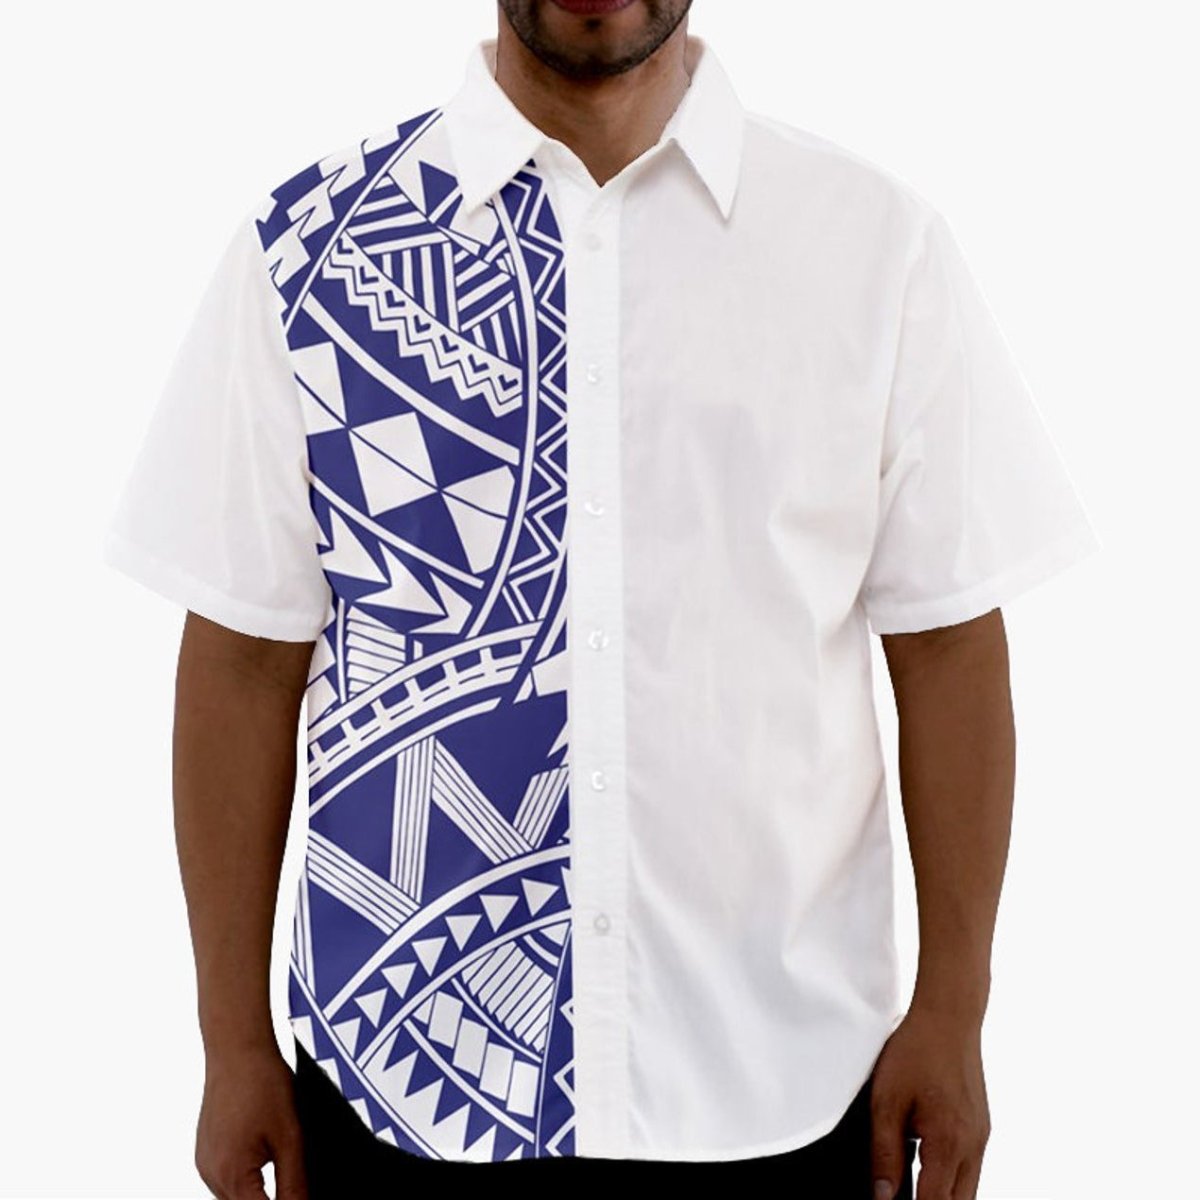 Polynesian Samoan Navy Blue White Hawaiian Shirt Plhw0026 - Pinotee Store